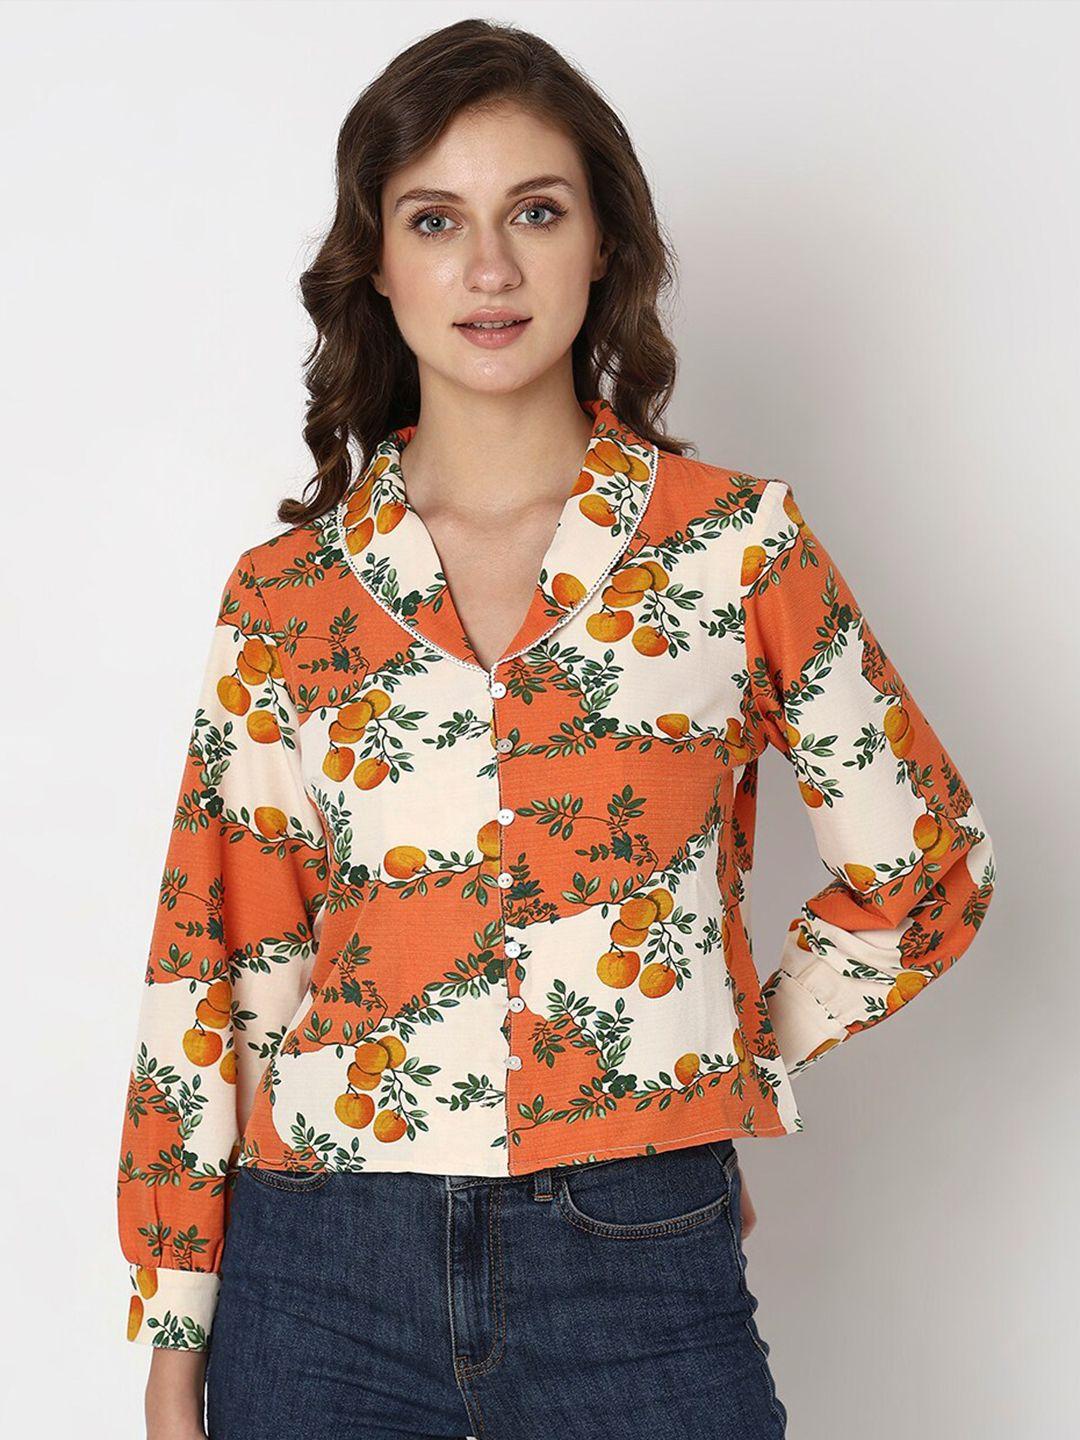 vero moda floral opaque printed casual shirt